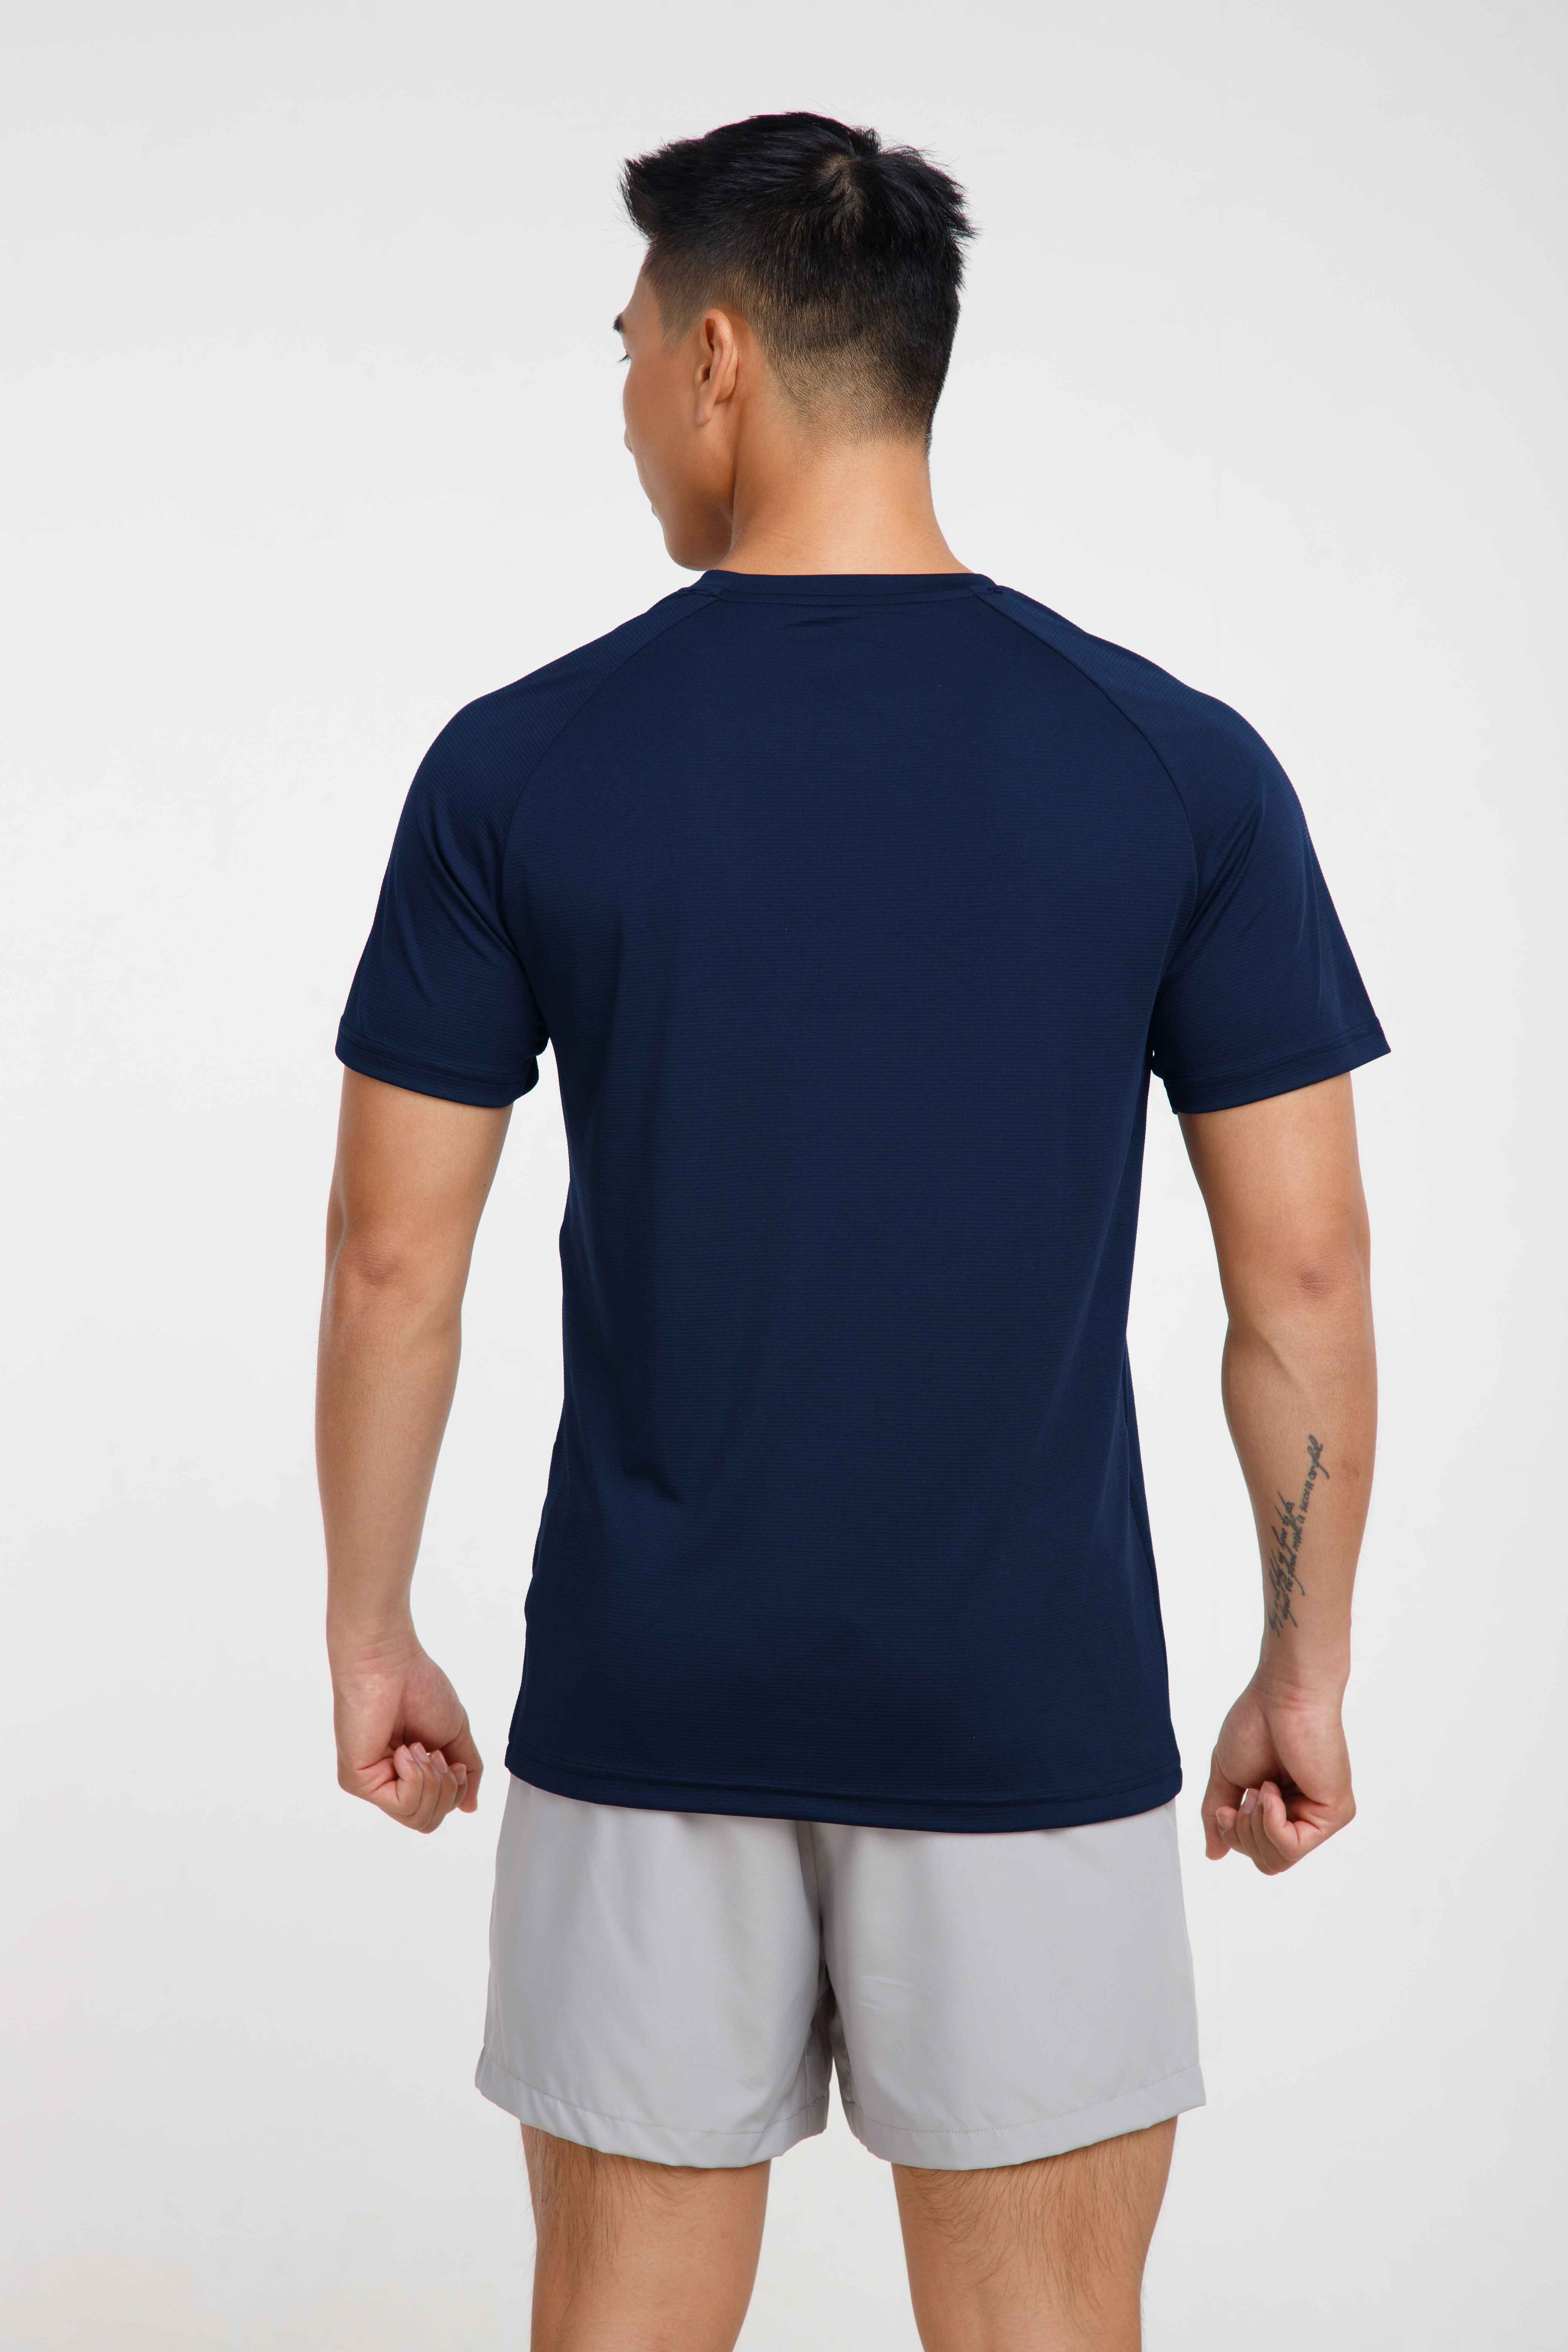 T-Shirt thể thao V1 xanh-navy 2